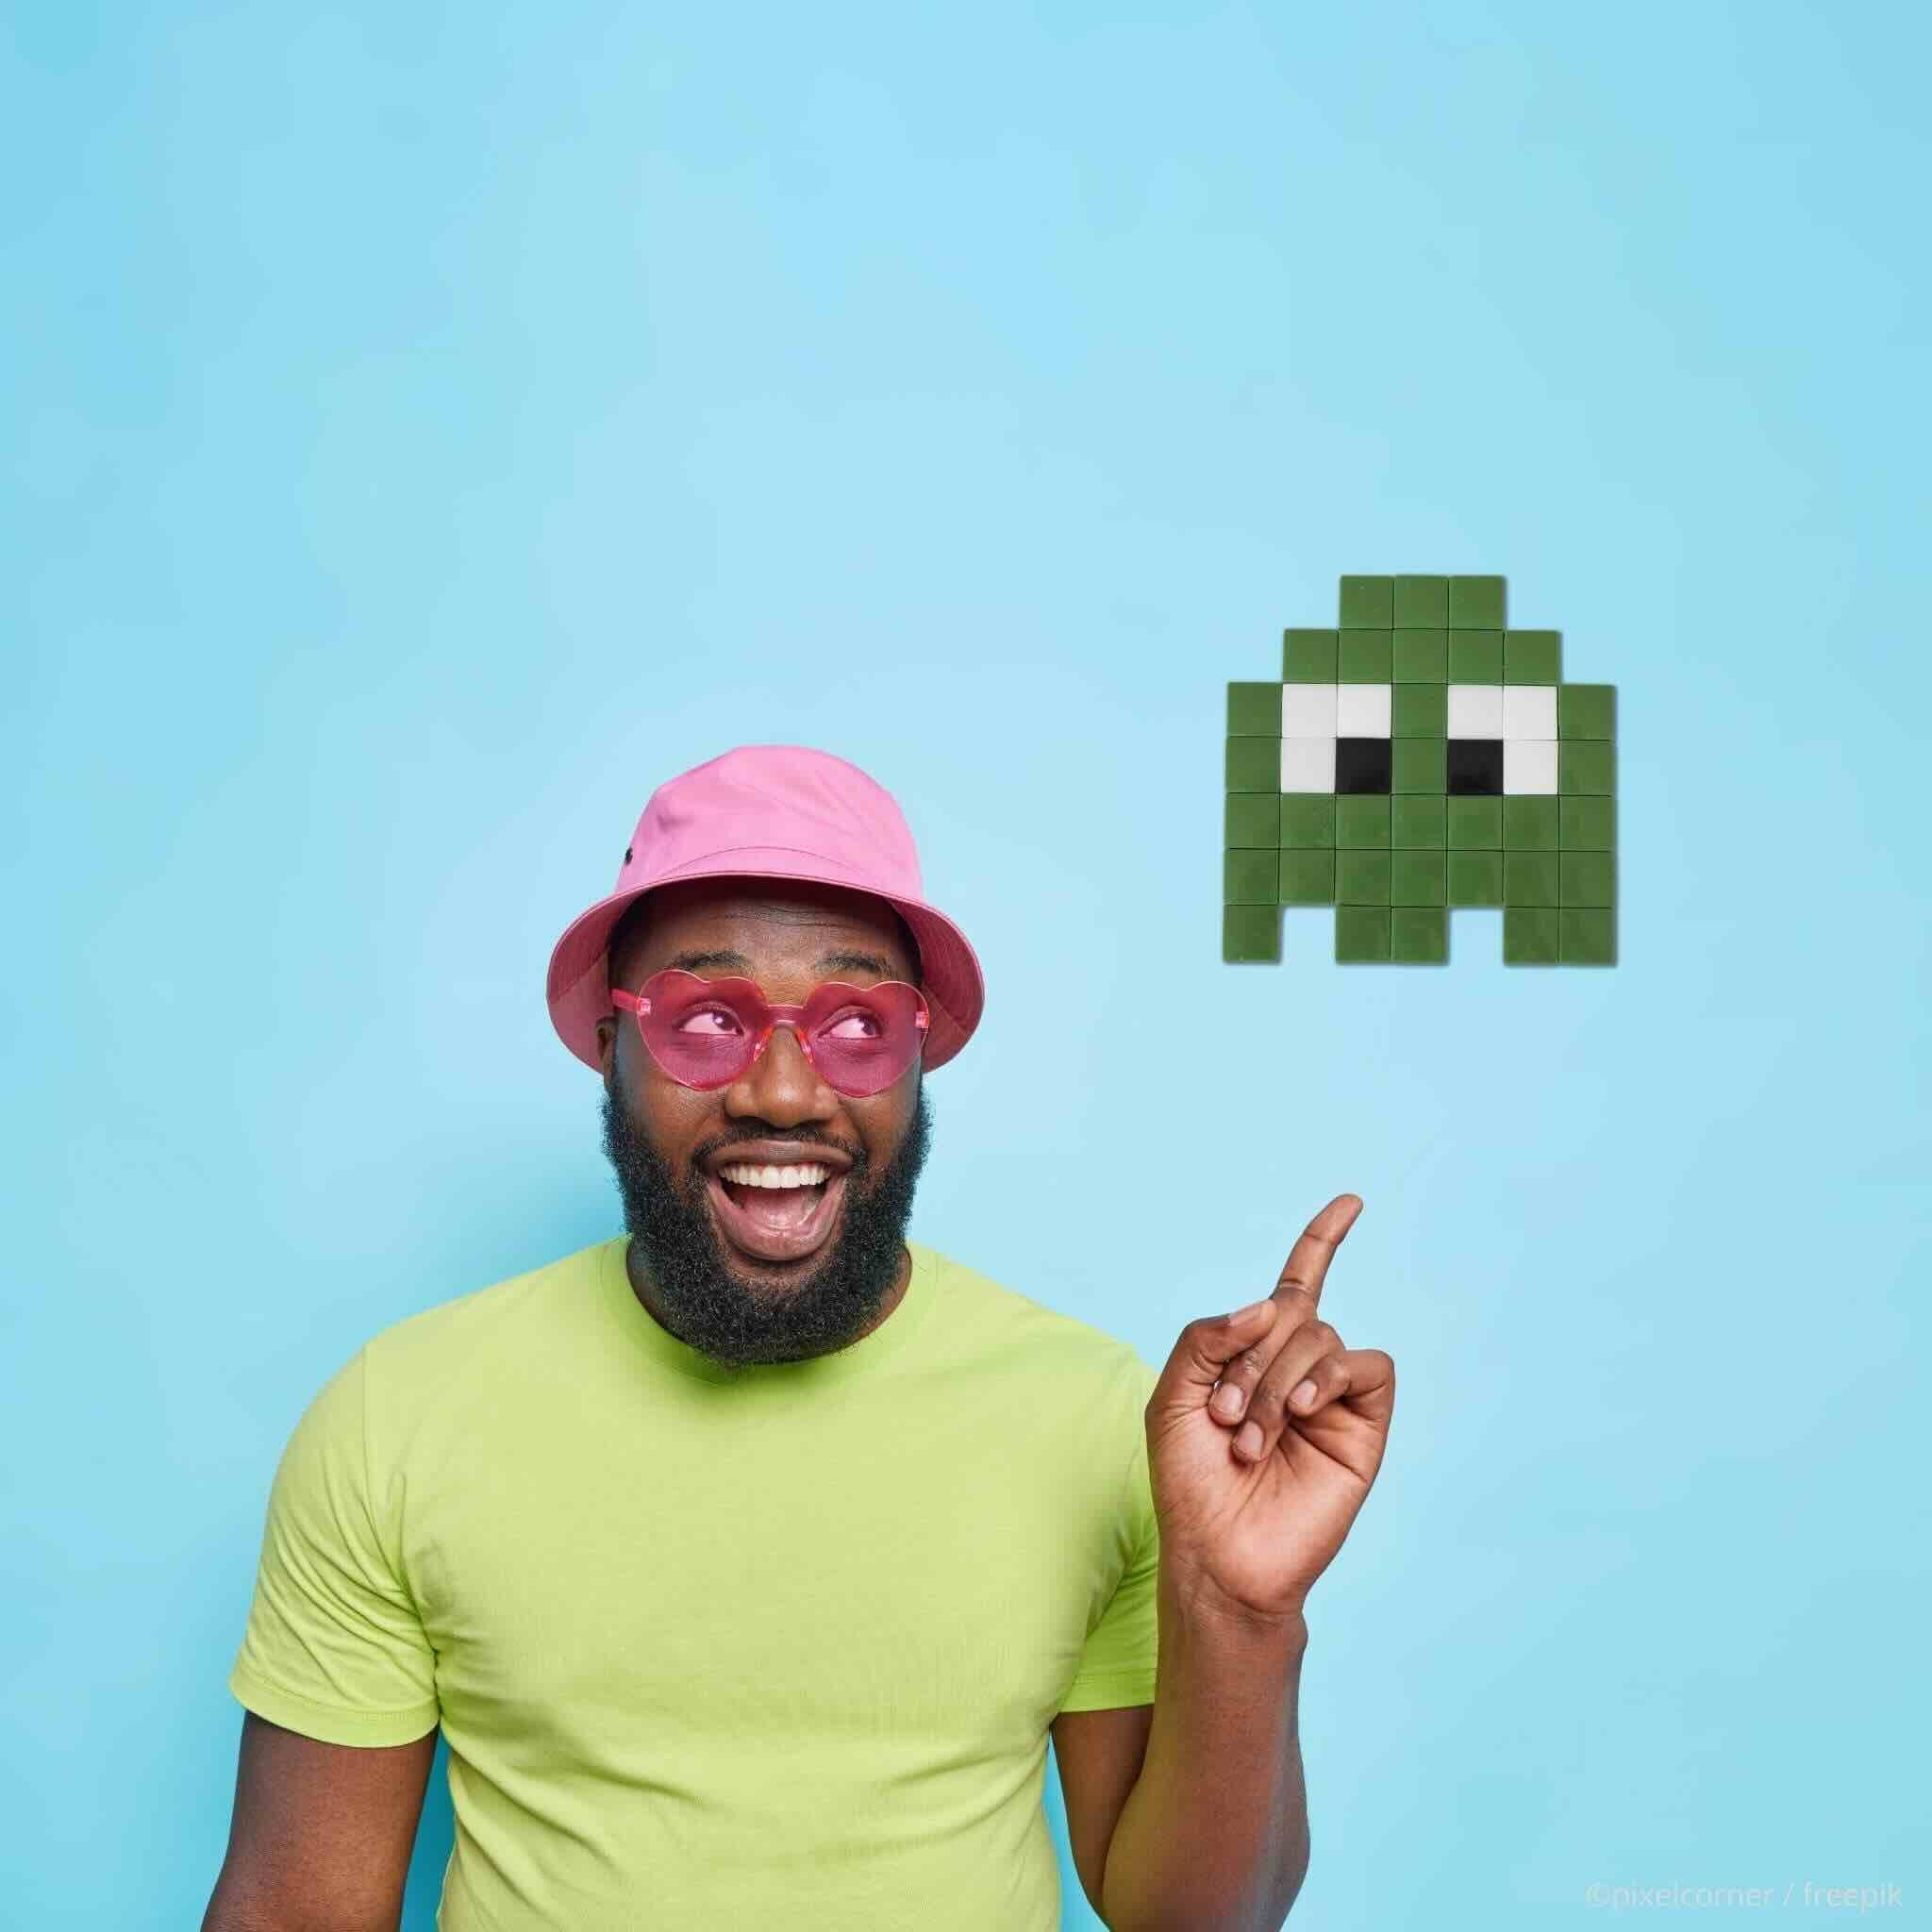 Pixel Art Kit "Les Gloomie(s)" - Kits de loisirs créatifs, un homme noir t-shirt vert et lunette rose heureux montre un fantome vert pixel art en mosaique diy